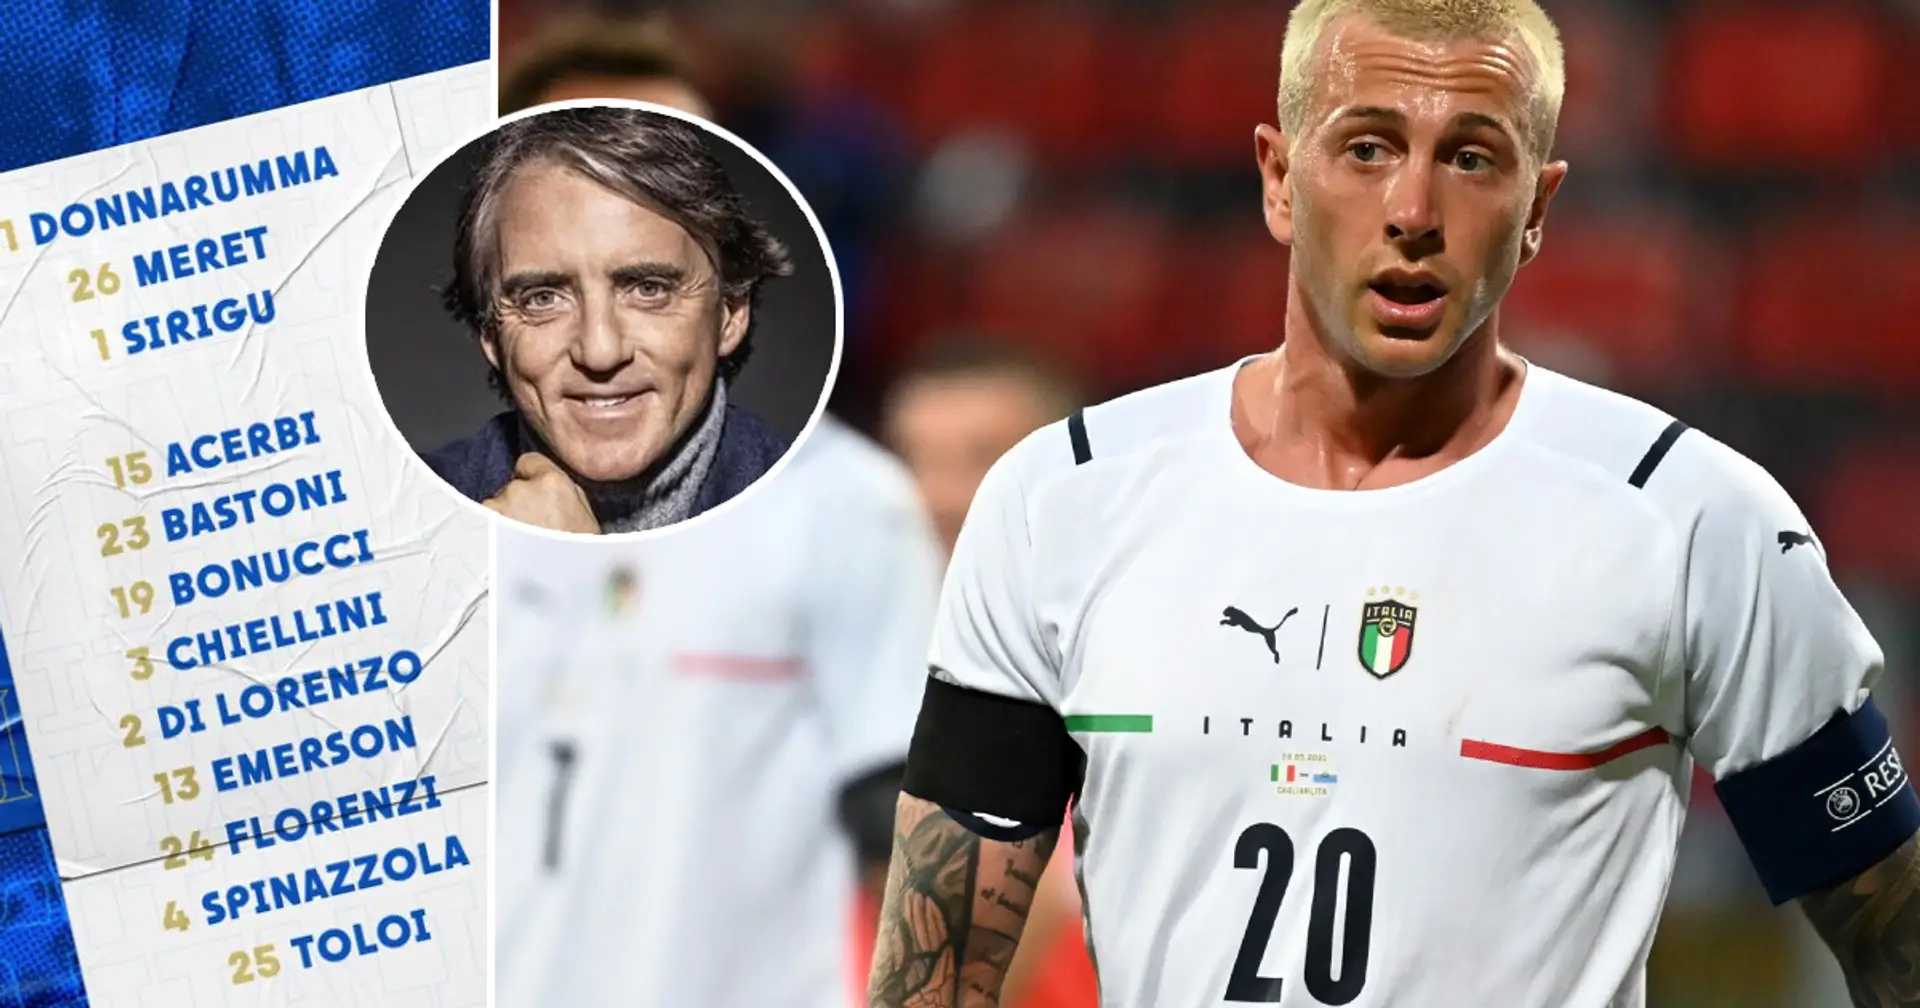 UFFICIALE: La lista dei 26 convocati di Mancini per Euro 2020, i tifosi non sono d'accordo